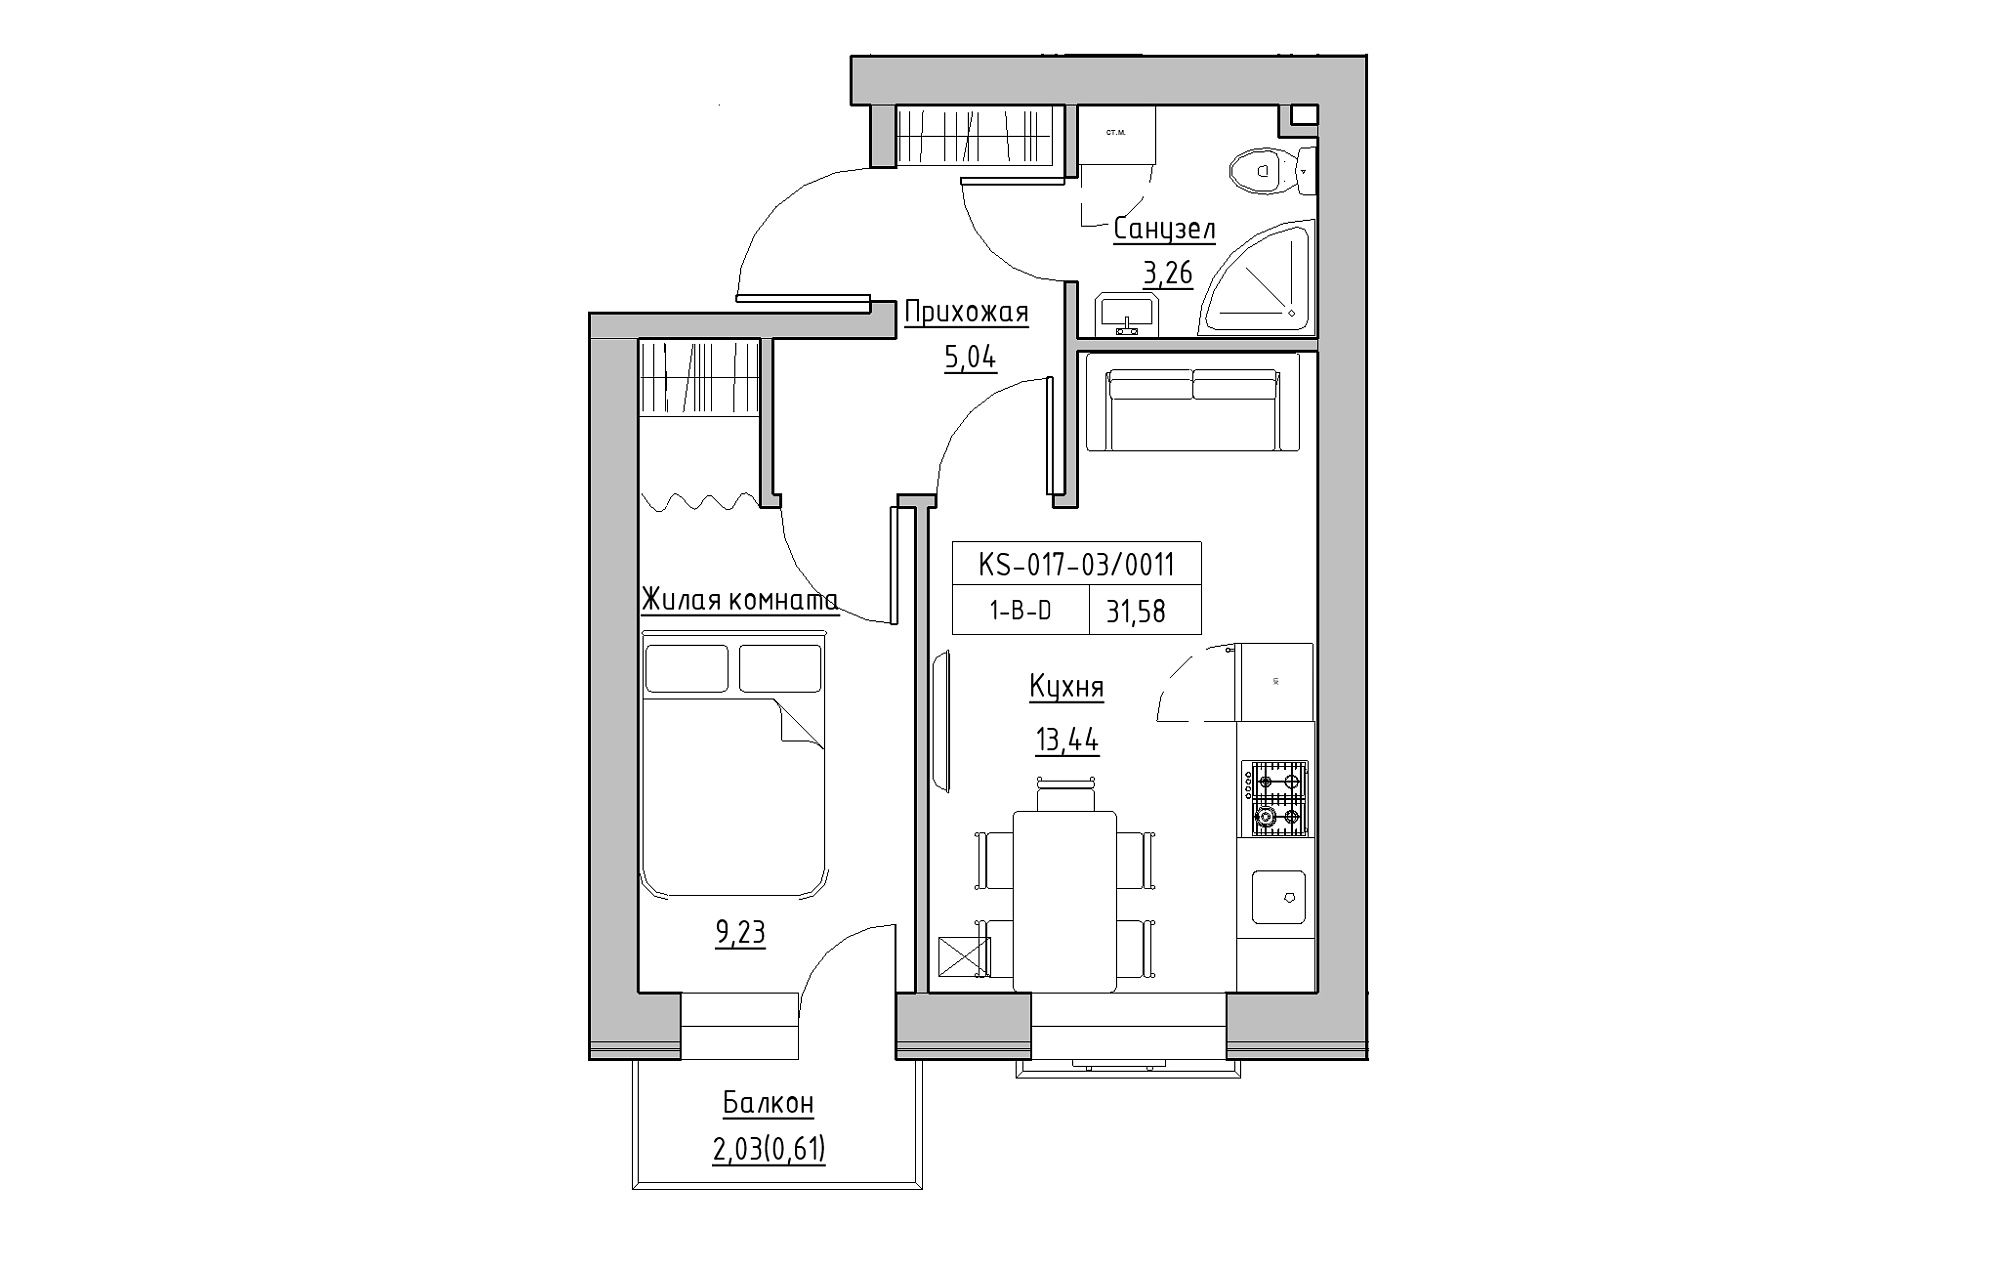 Планування 1-к квартира площею 31.58м2, KS-017-03/0011.